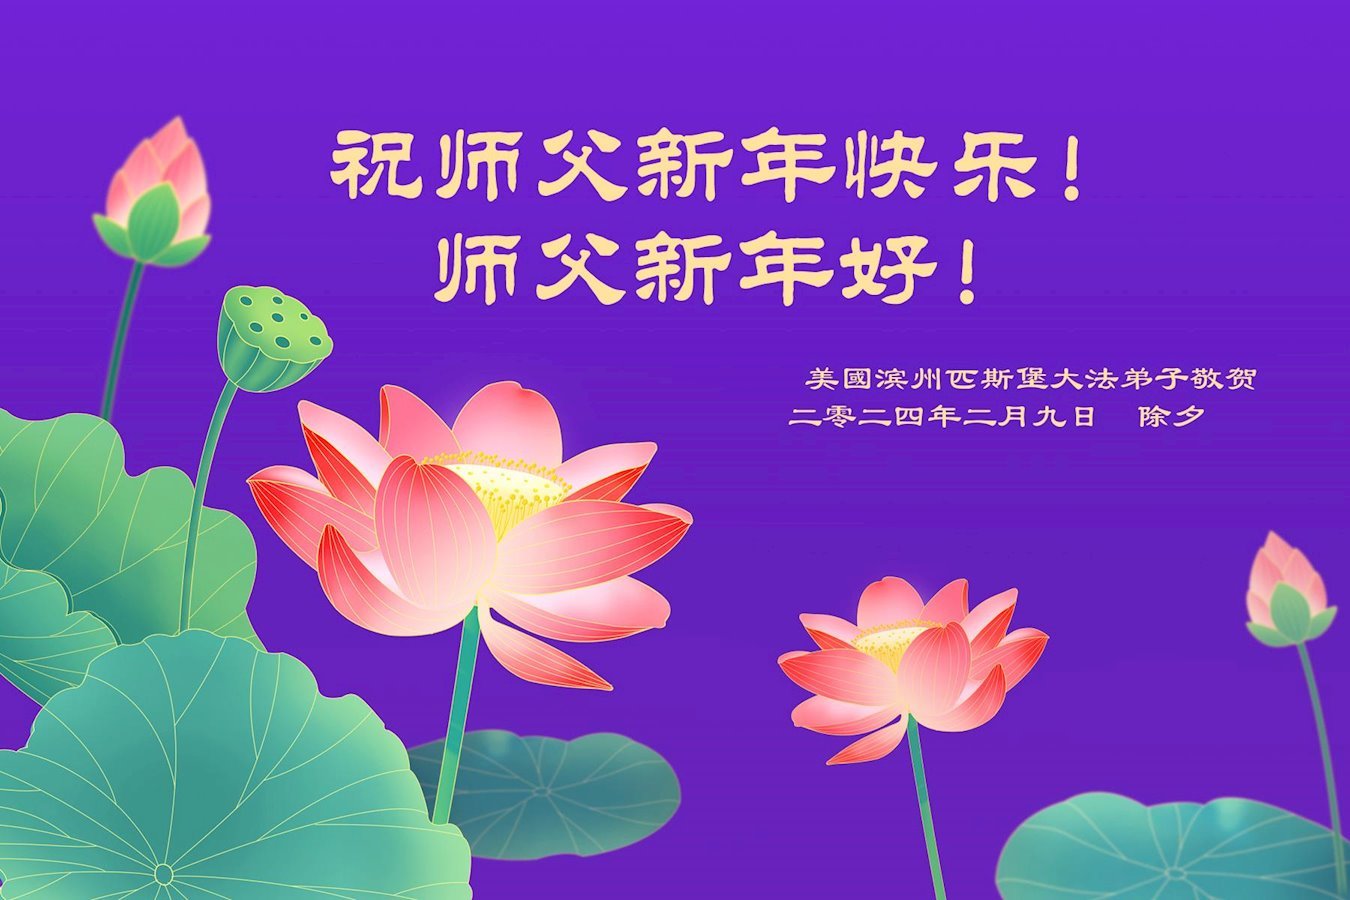 Image for article Les pratiquants de Falun Dafa des États-Unis souhaitent respectueusement au vénérable Maître Li Hongzhi un bon Nouvel An chinois